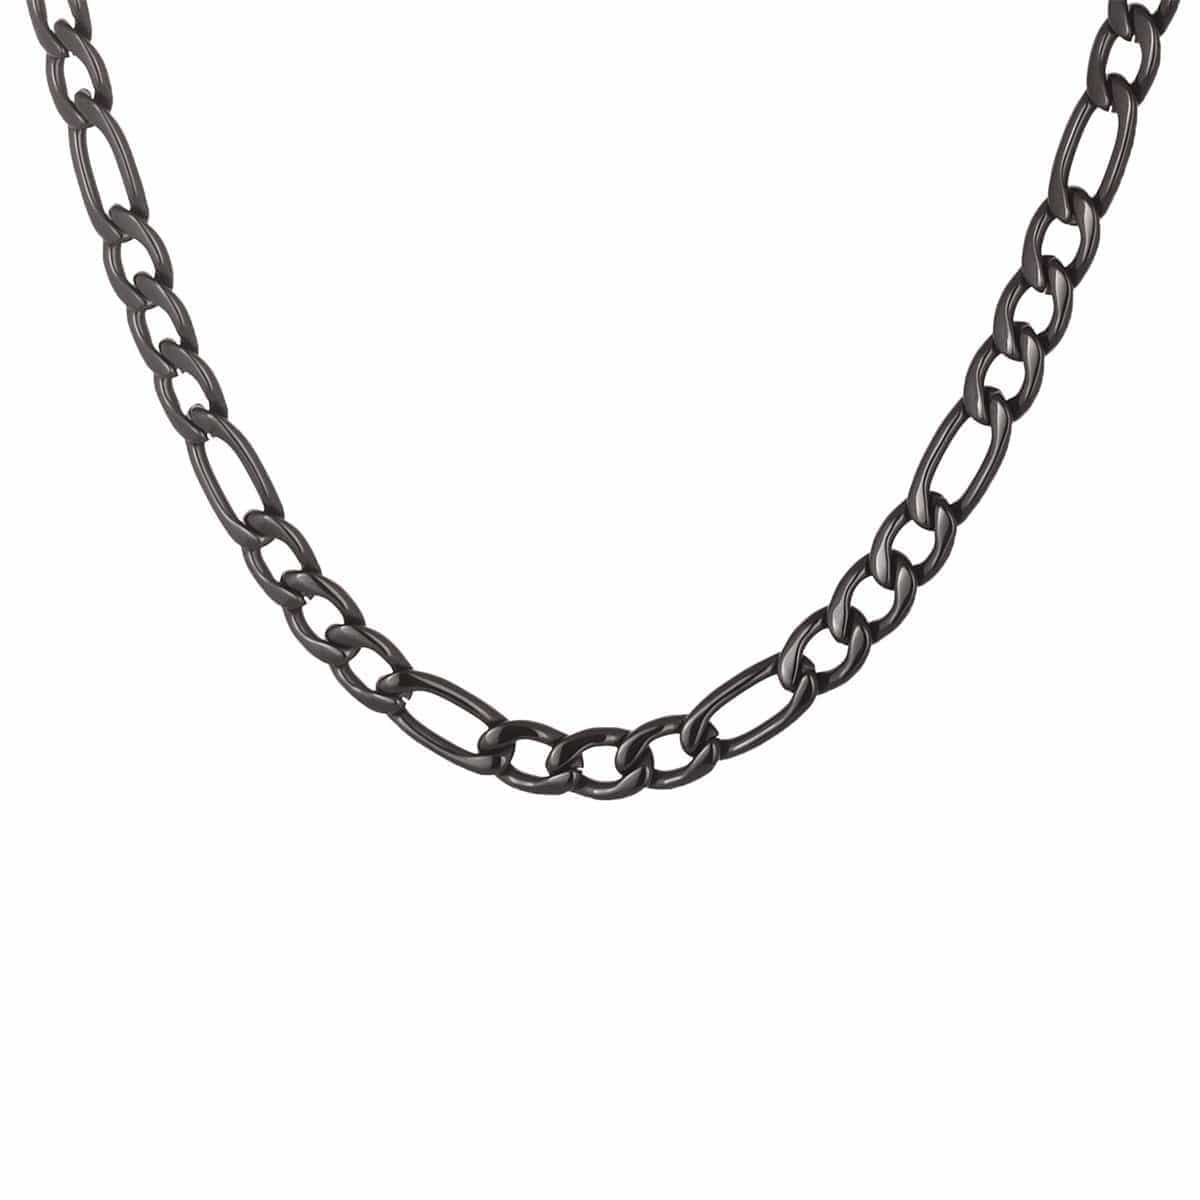 INOX JEWELRY Chains Black Stainless Steel 6mm Figaro Classic Chain